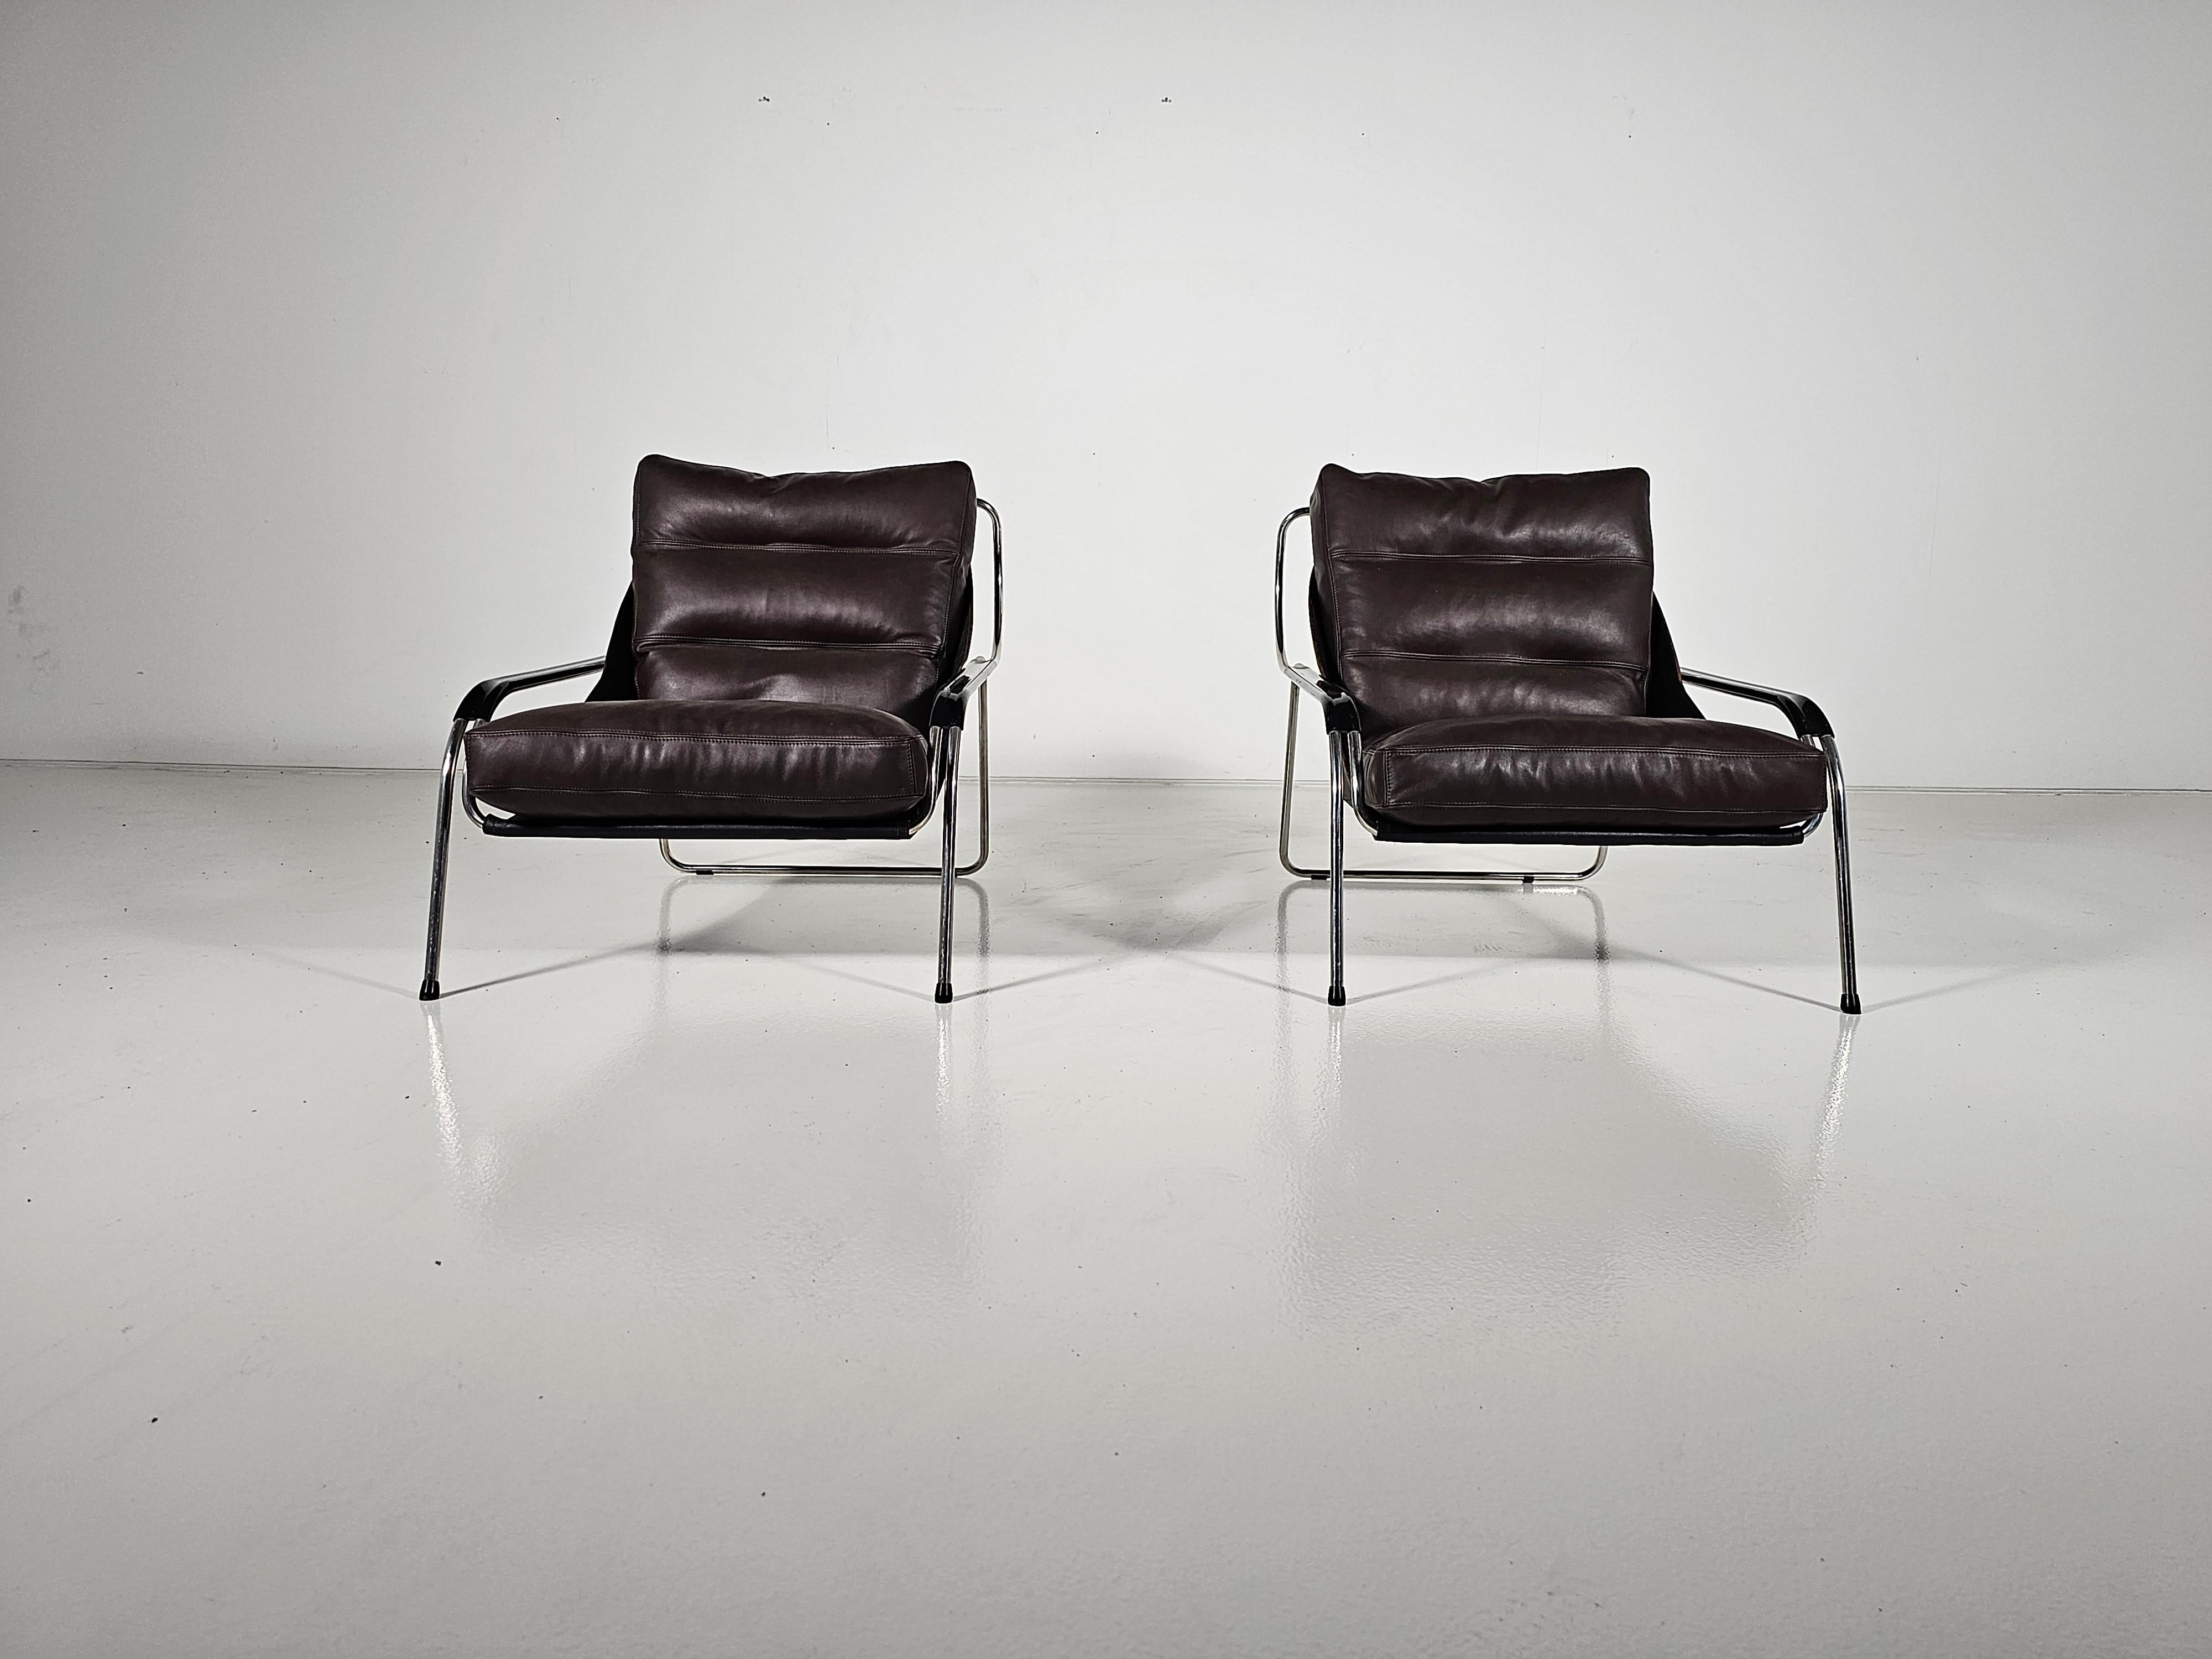 1. Auflage der Maggiolina-Stühle von Zanotta, entworfen von Marco Zanuso in den 1950er Jahren. Die Schlinge aus schwarzem Rindsleder trägt ein großes, neu gepolstertes braunes Lederkissen mit einer Gänsefederfüllung.  Ein Gestell aus rostfreiem